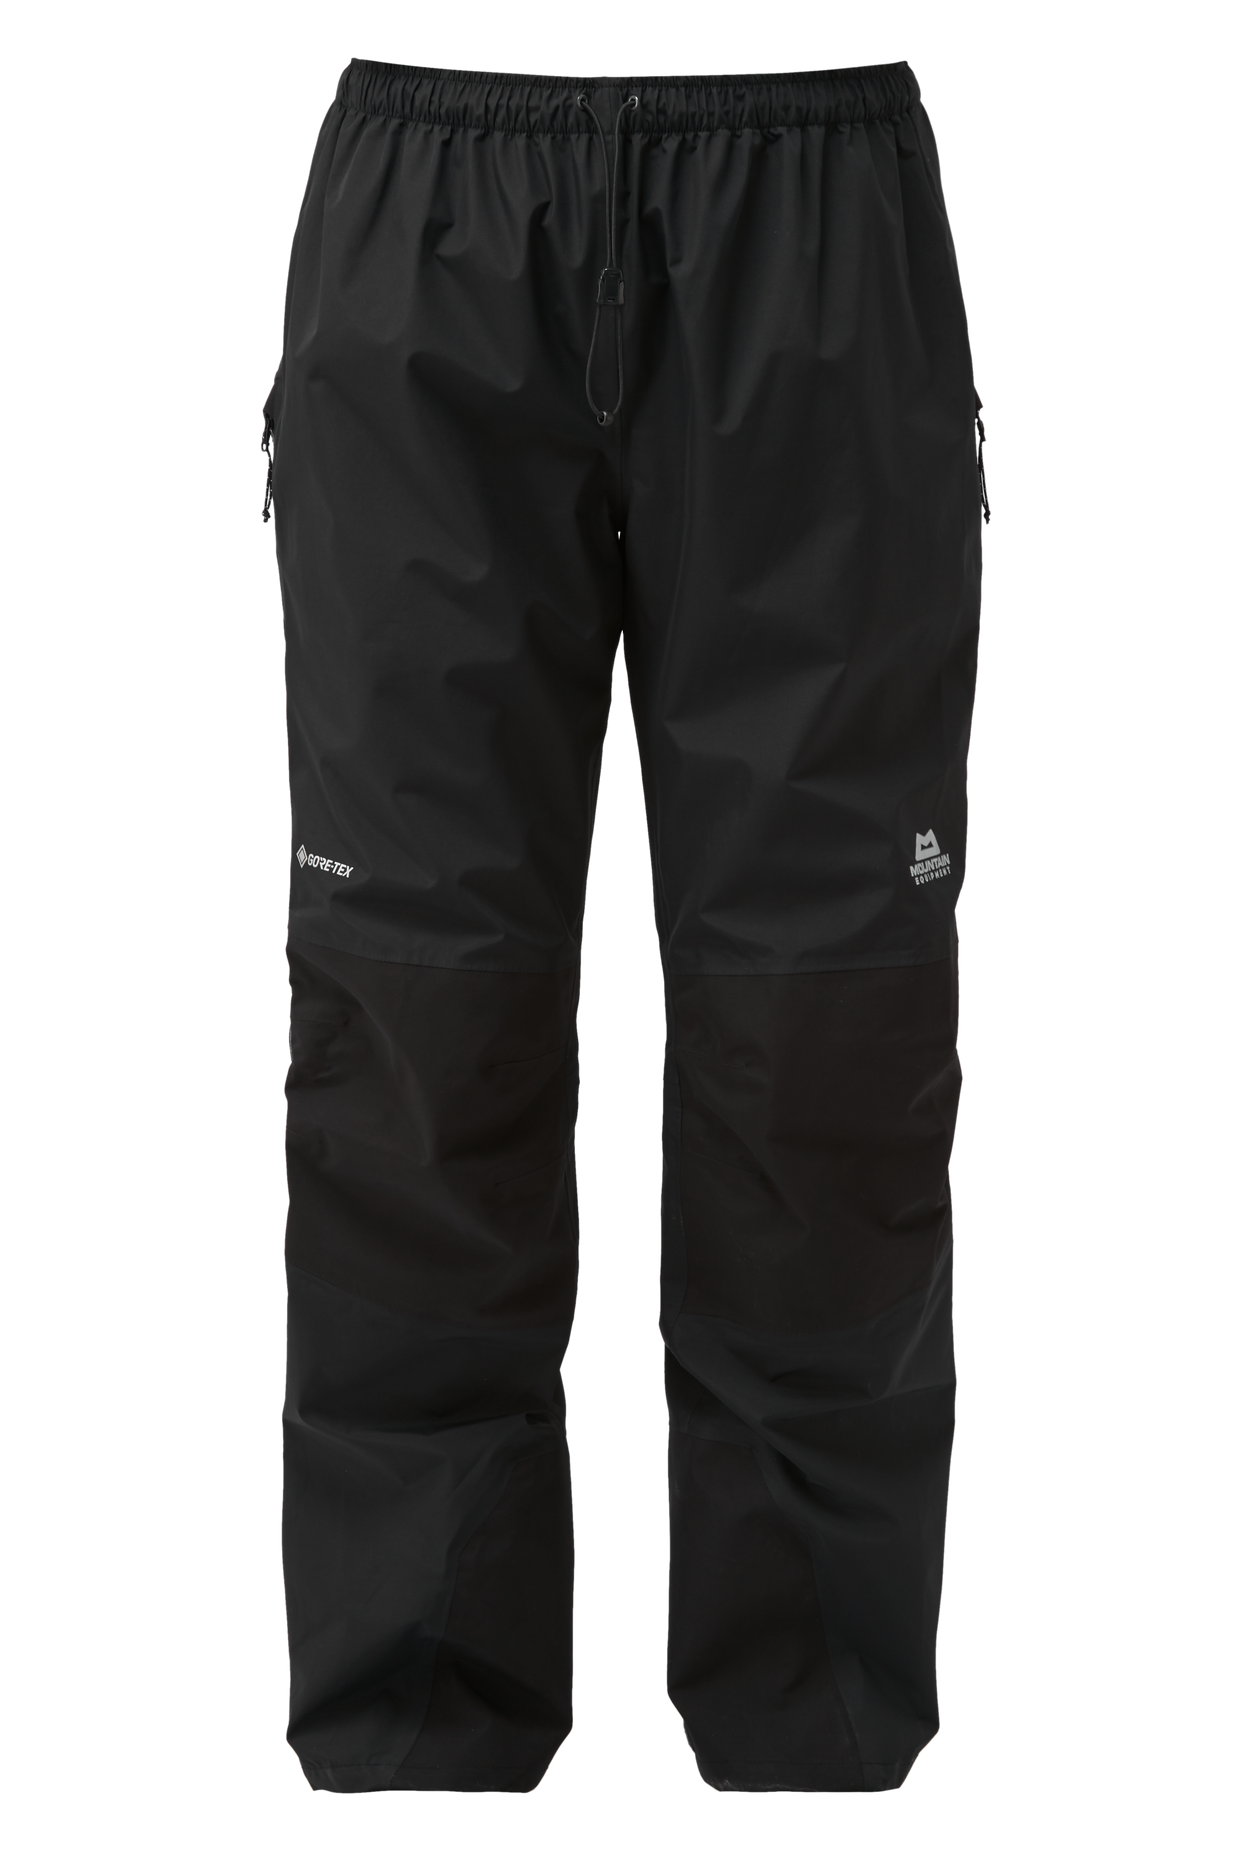 Mountain Equipment dámské nepromokavé kalhoty Saltoro Wmns Pant - zkrácené Barva: black, Velikost: 8/XS